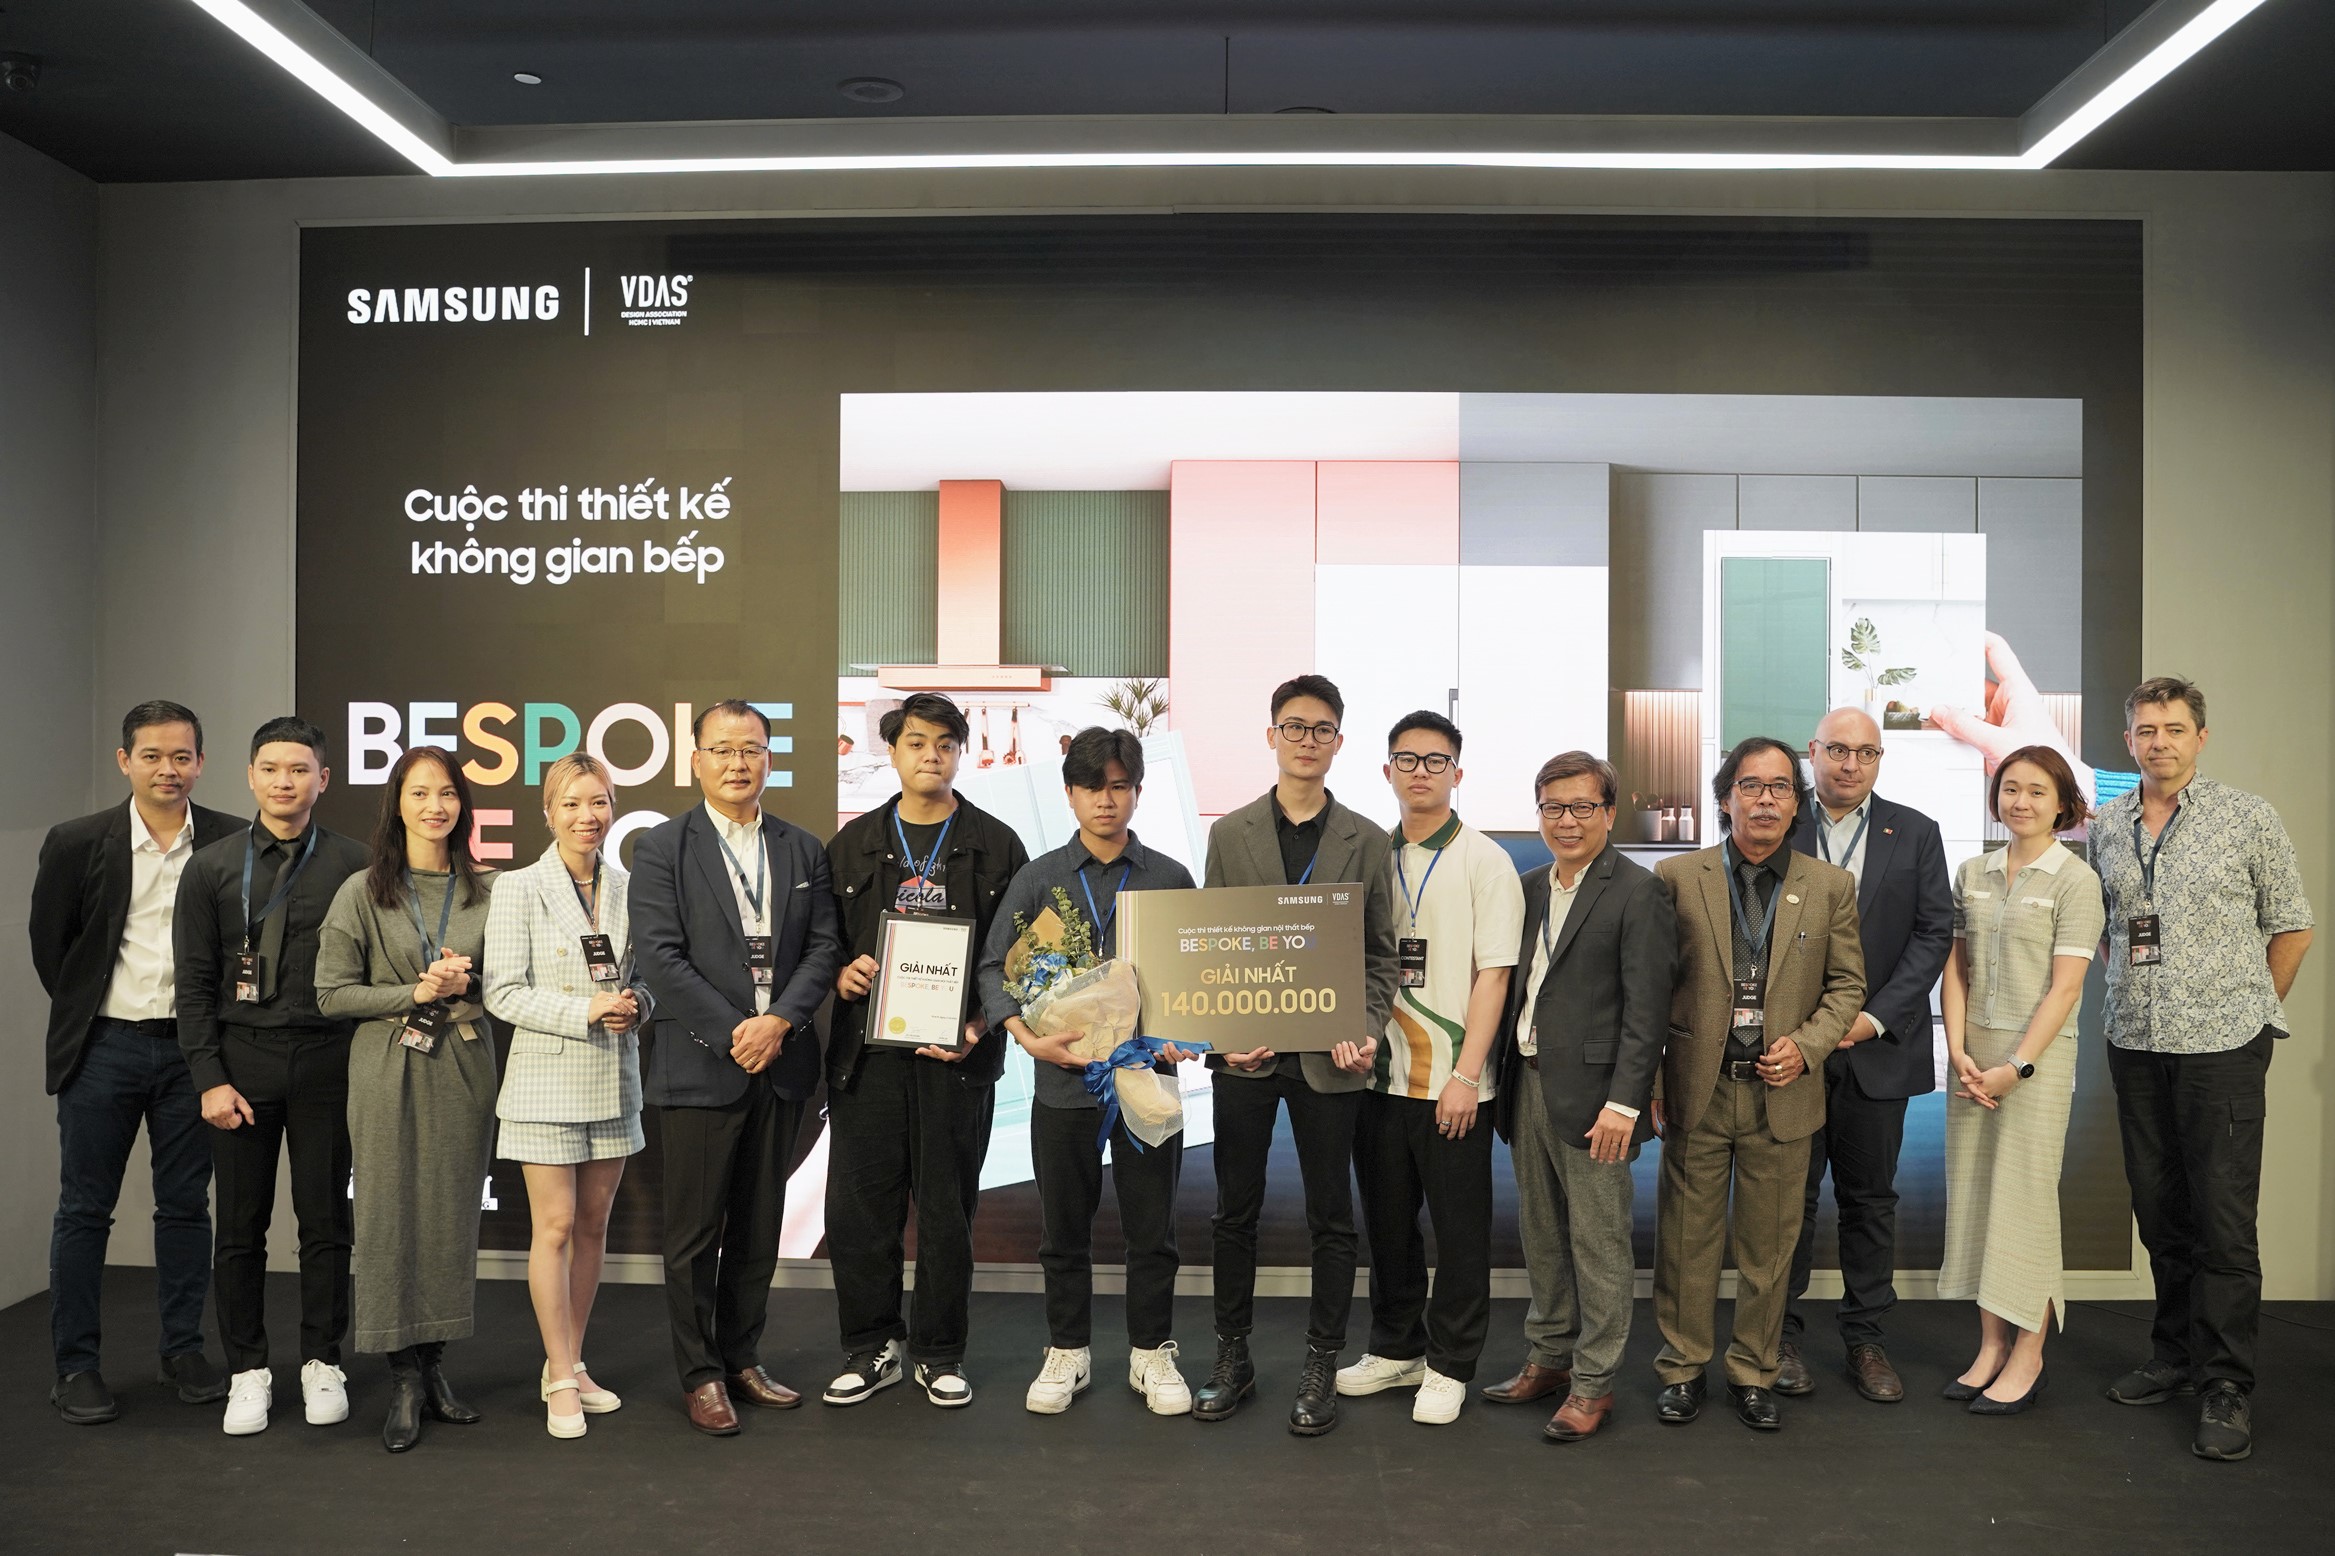 Samsung vinh danh người chiến thắng cuộc thi thiết kế không gian bếp “Bespoke, Be You”